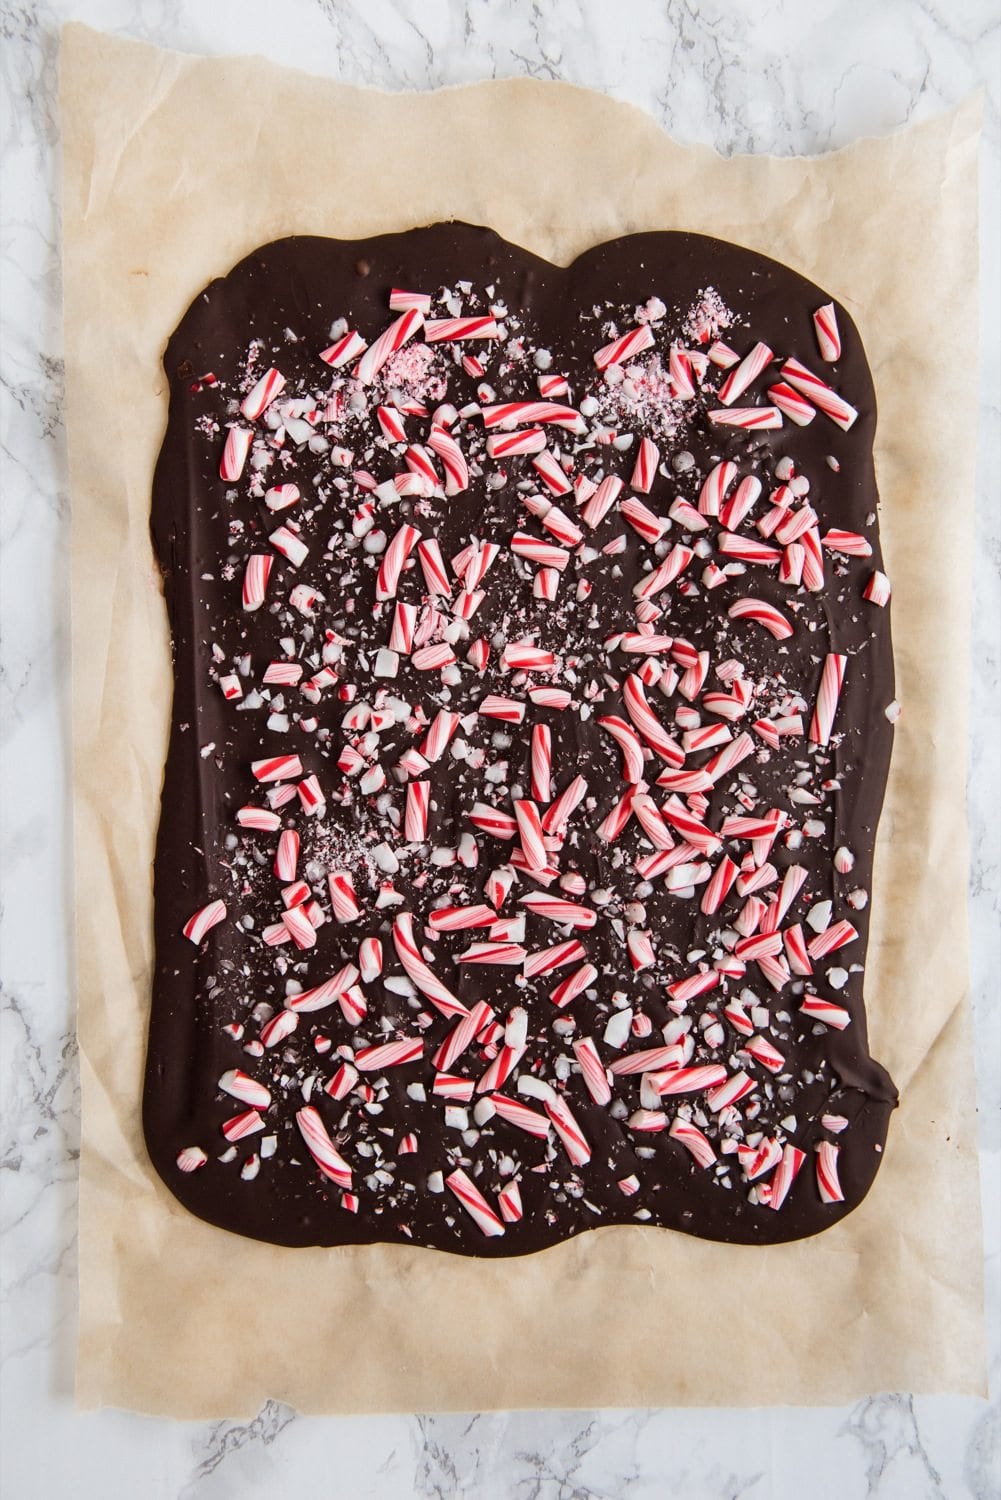 6 Christmas Chocolate Bark Recipes | Homemade Christmas gifts, Christmas recipes and more from @cydconverse